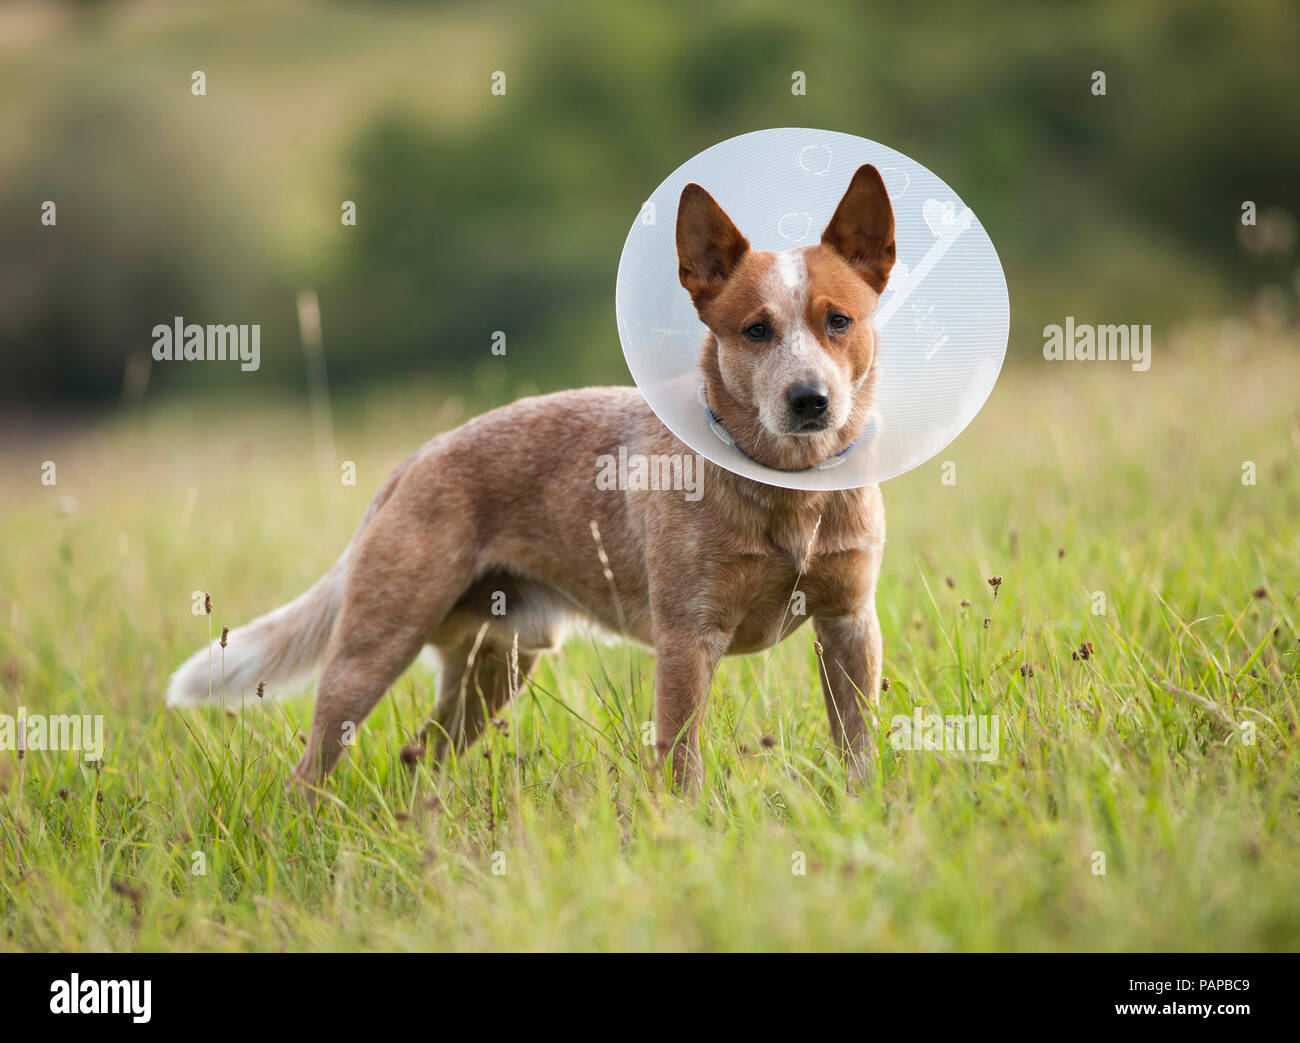 Perro de ganado australiano vistiendo un Collar isabelino para evitar que el animal se lame o muerde durante la cicatrización de heridas. Alemania Foto de stock